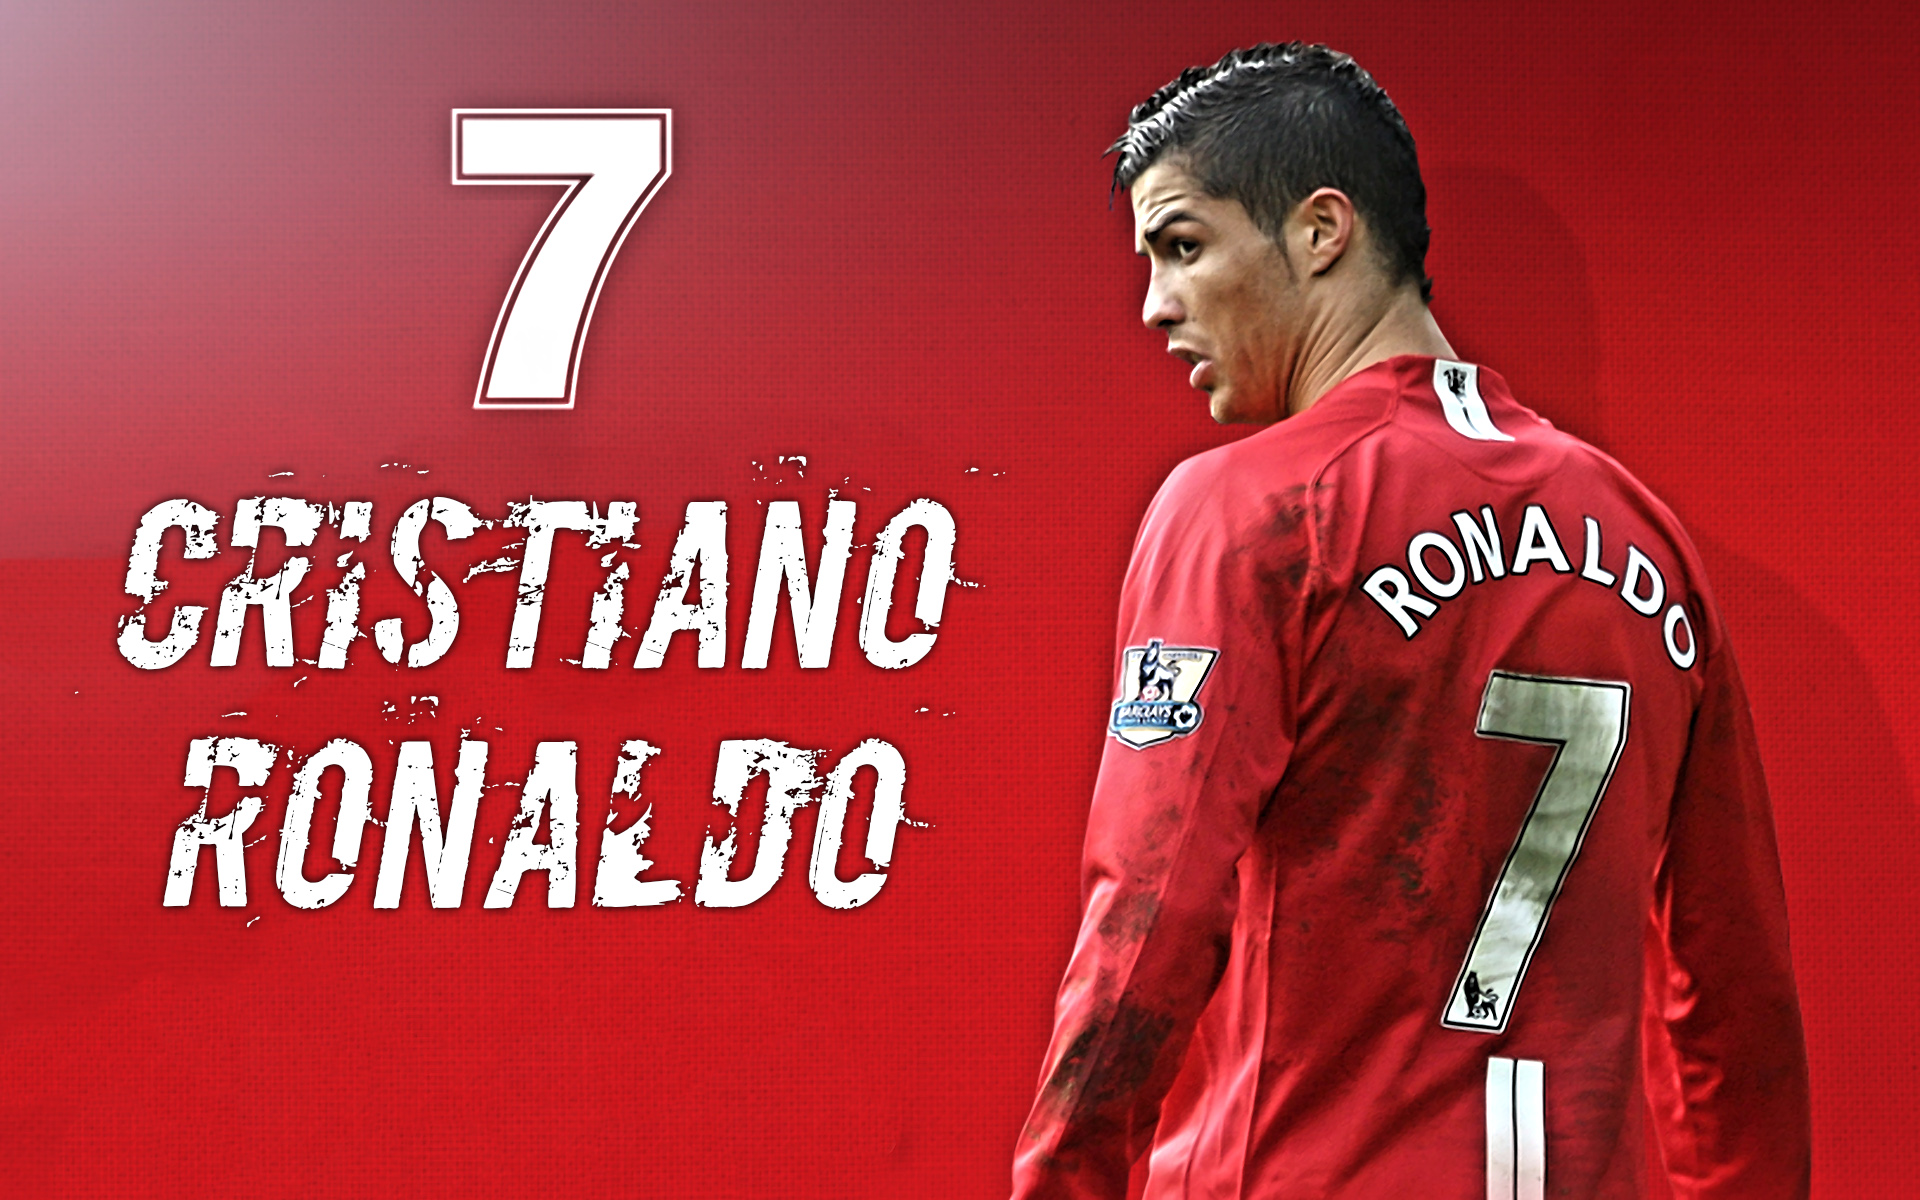 Manchester United Wallpaper Cristiano Ronaldo - HD Wallpaper 